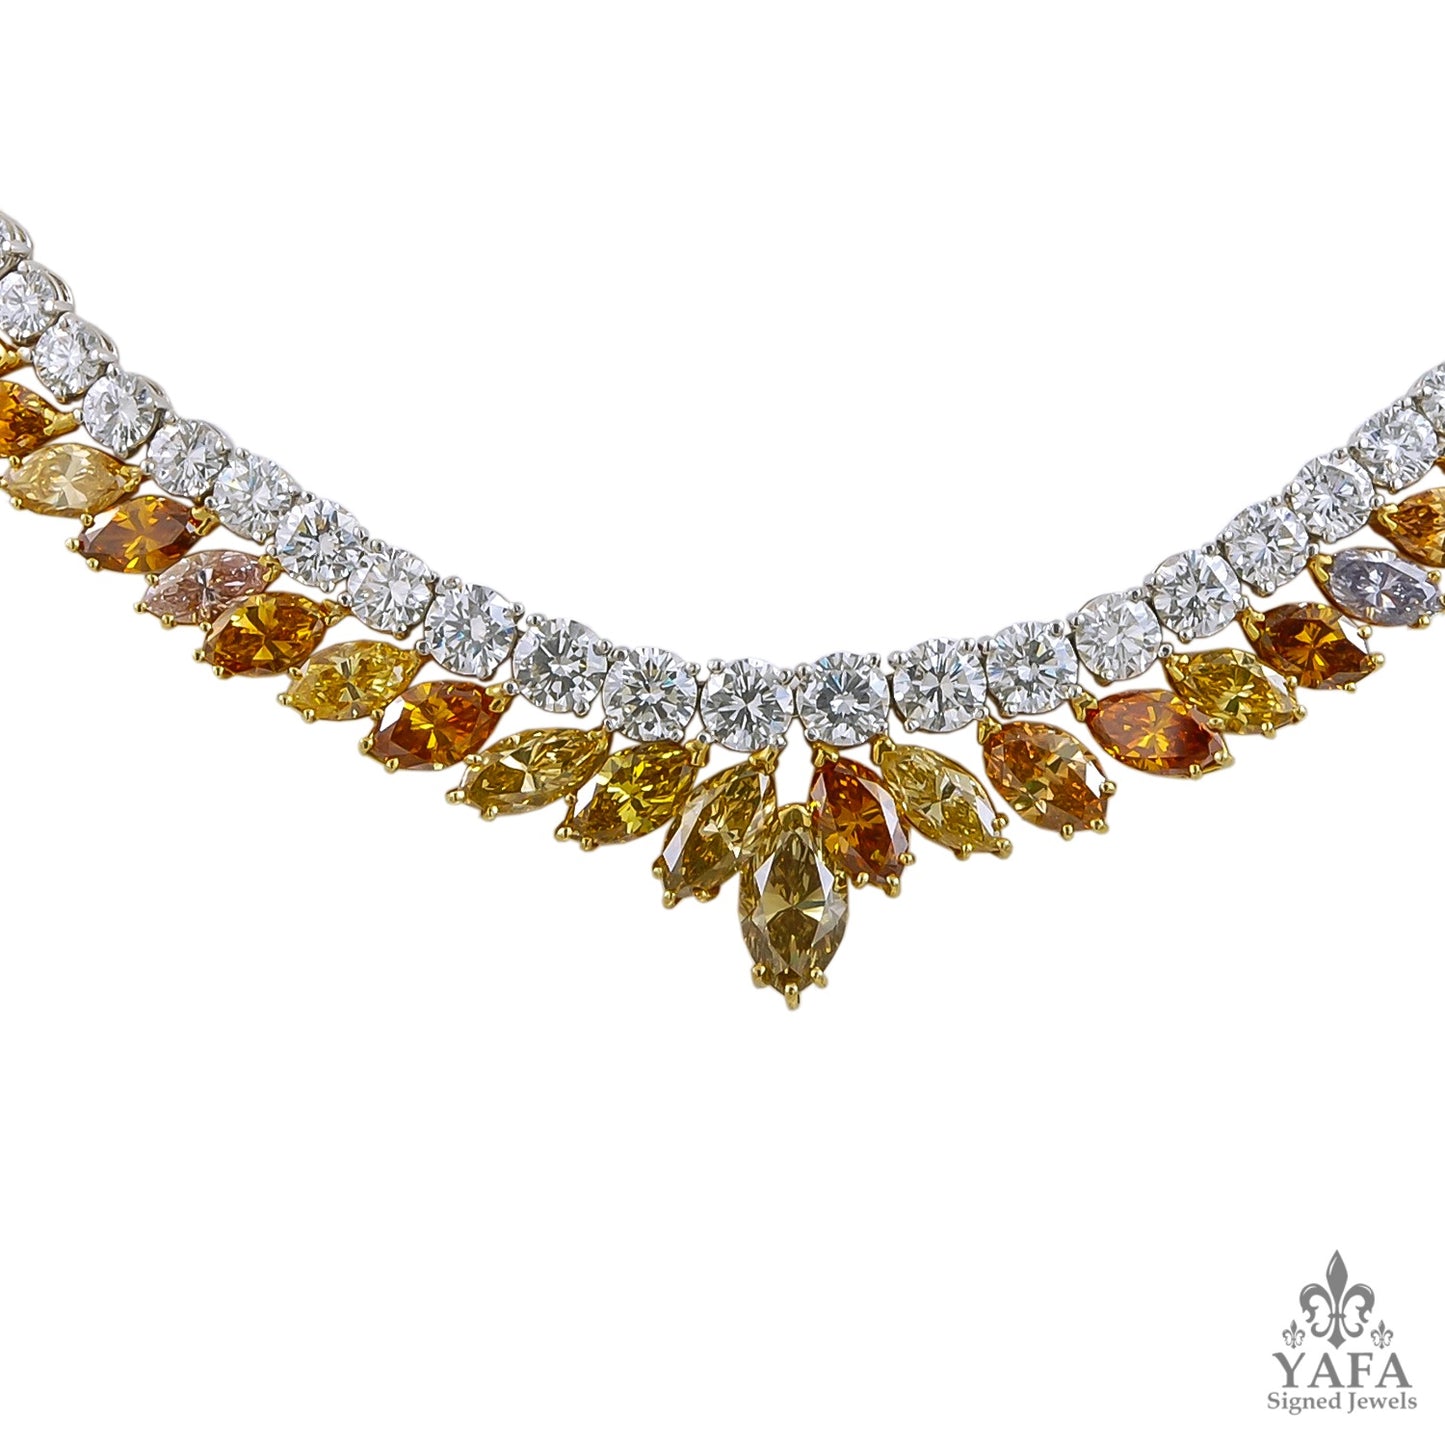 18k Gold White, Fancy Diamond Necklace